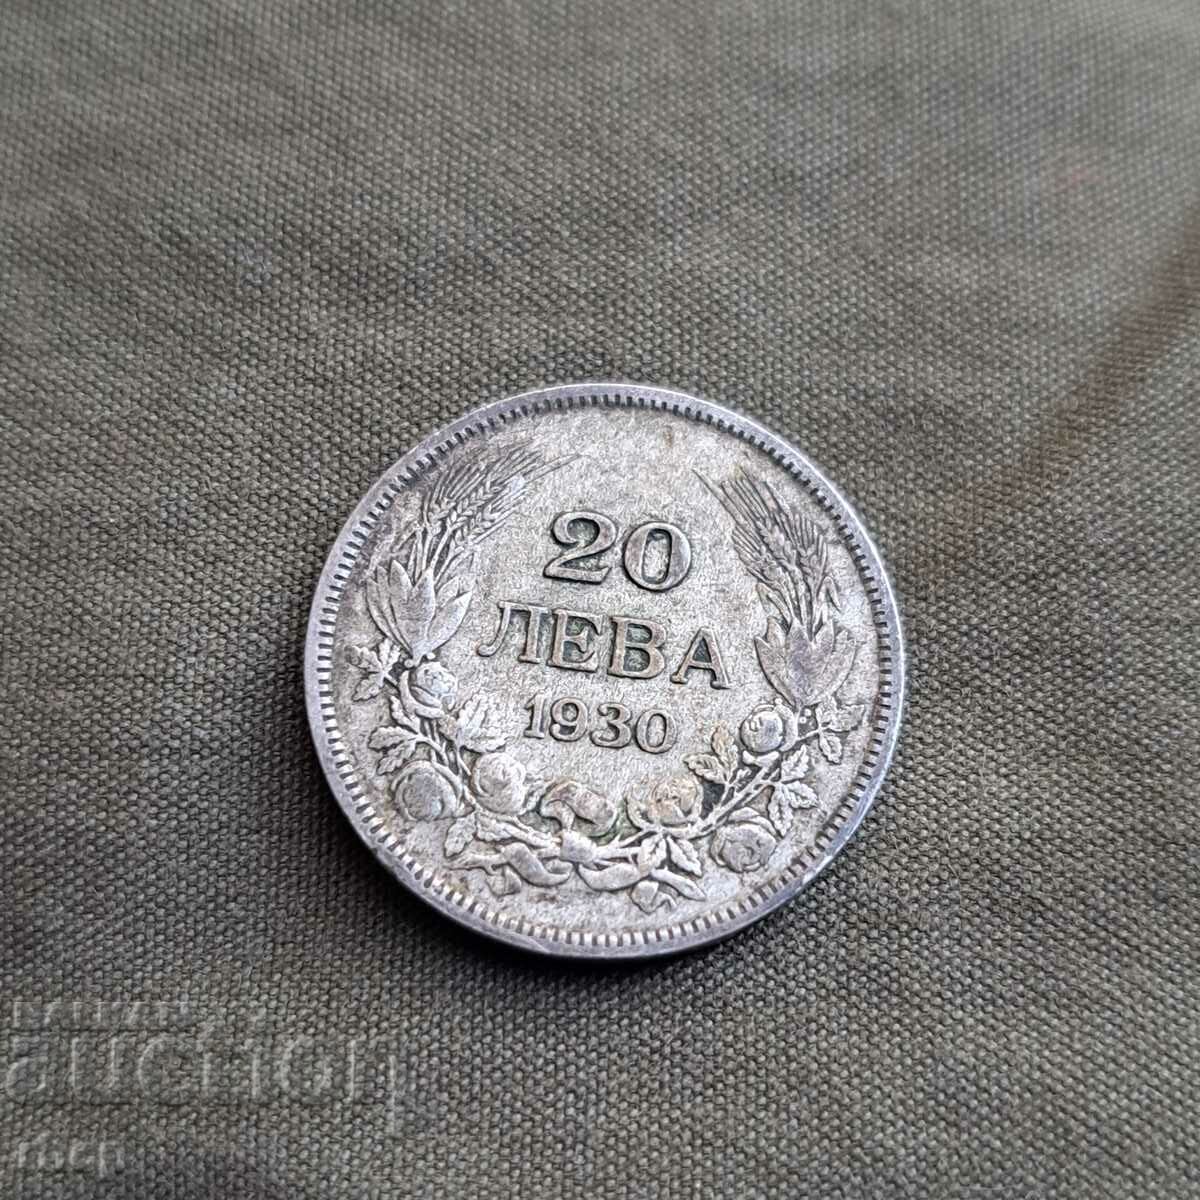 Monedă de 20 BGN 1930 .... numărul 2